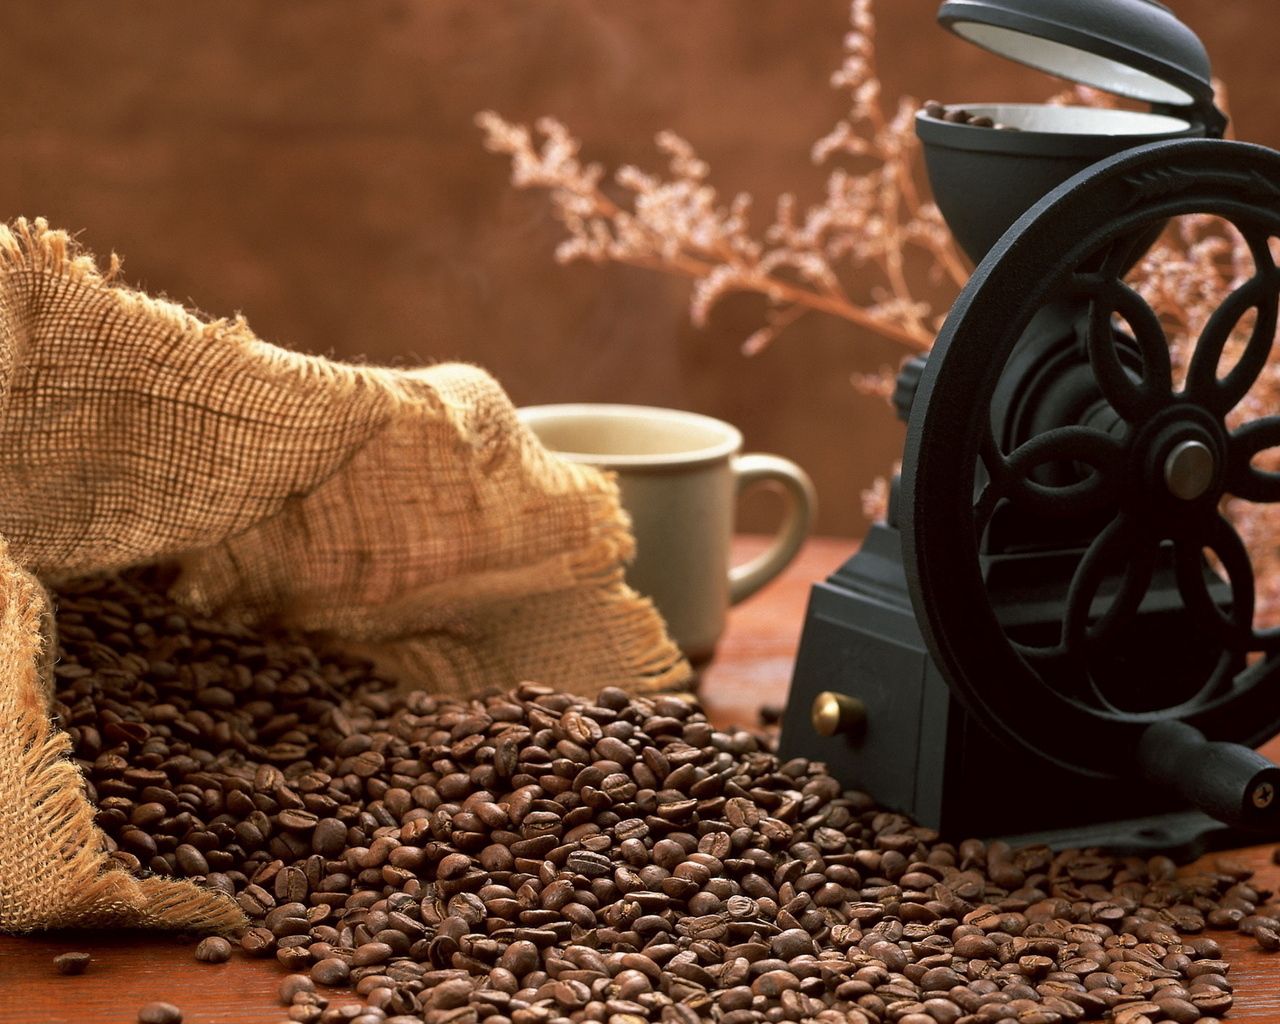 coffee, food, cup, grains, bag, grain, sack, coffee grinder